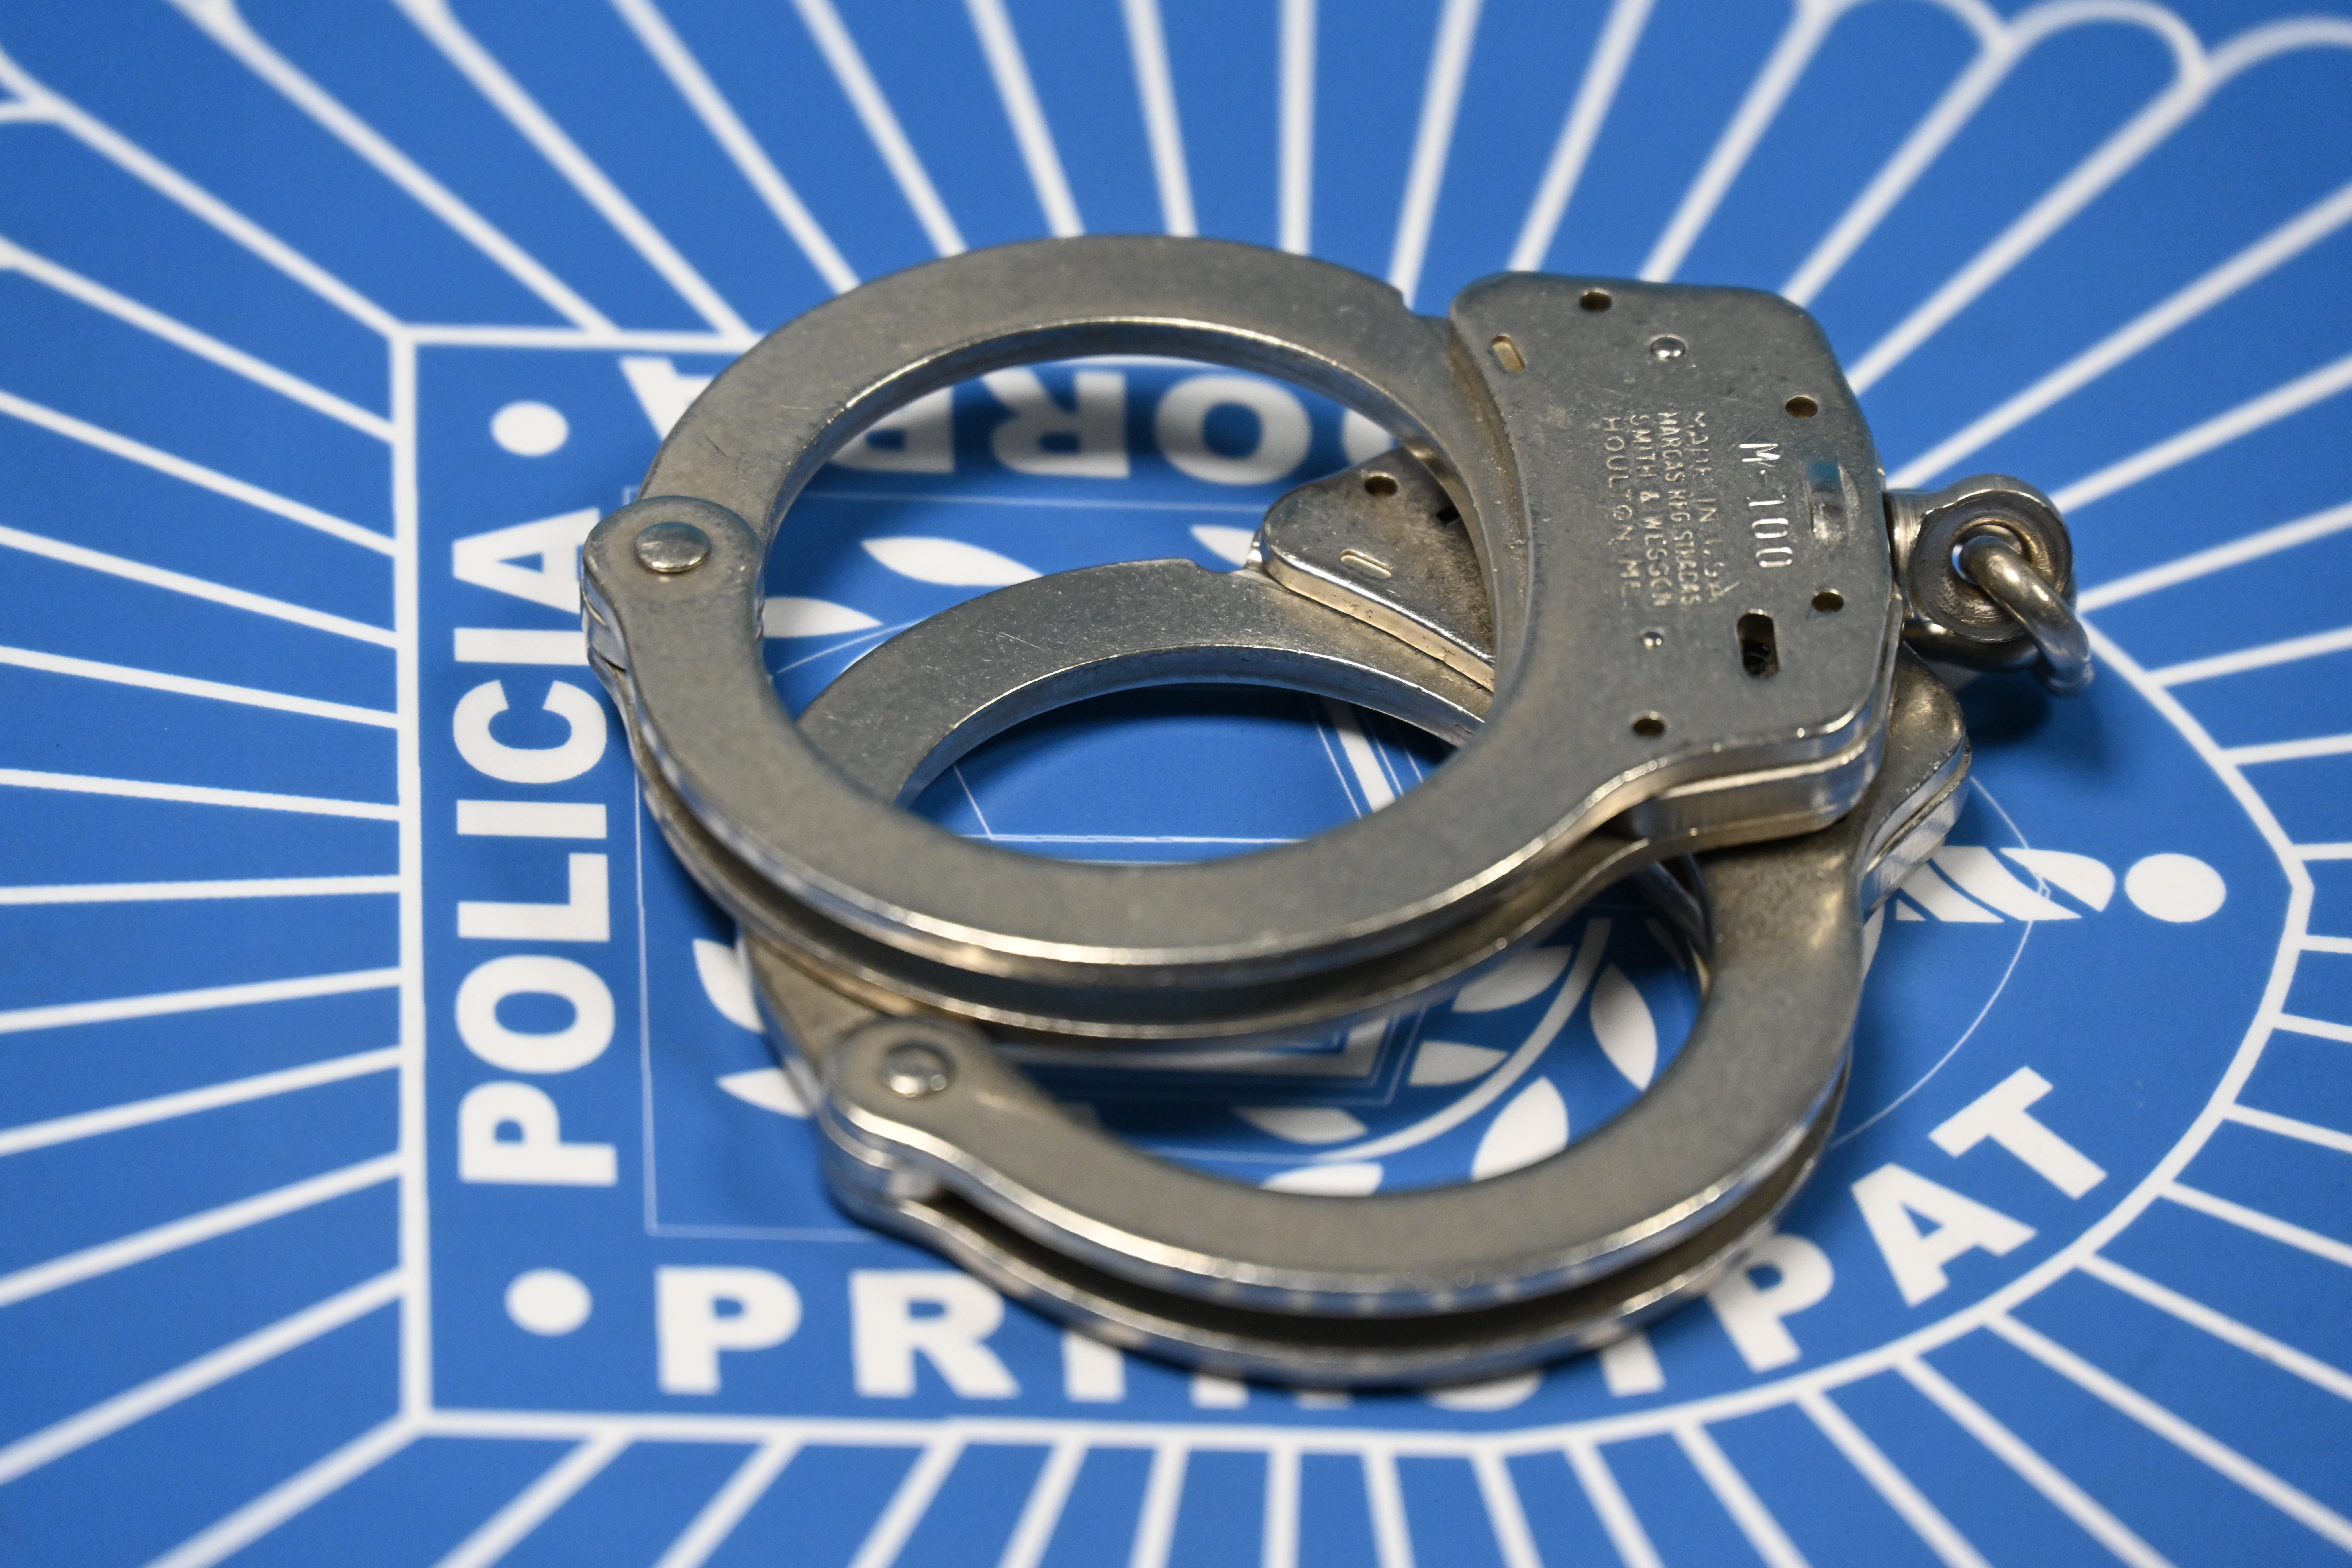 La Policia deté una persona per furt d’ús d’un vehicle